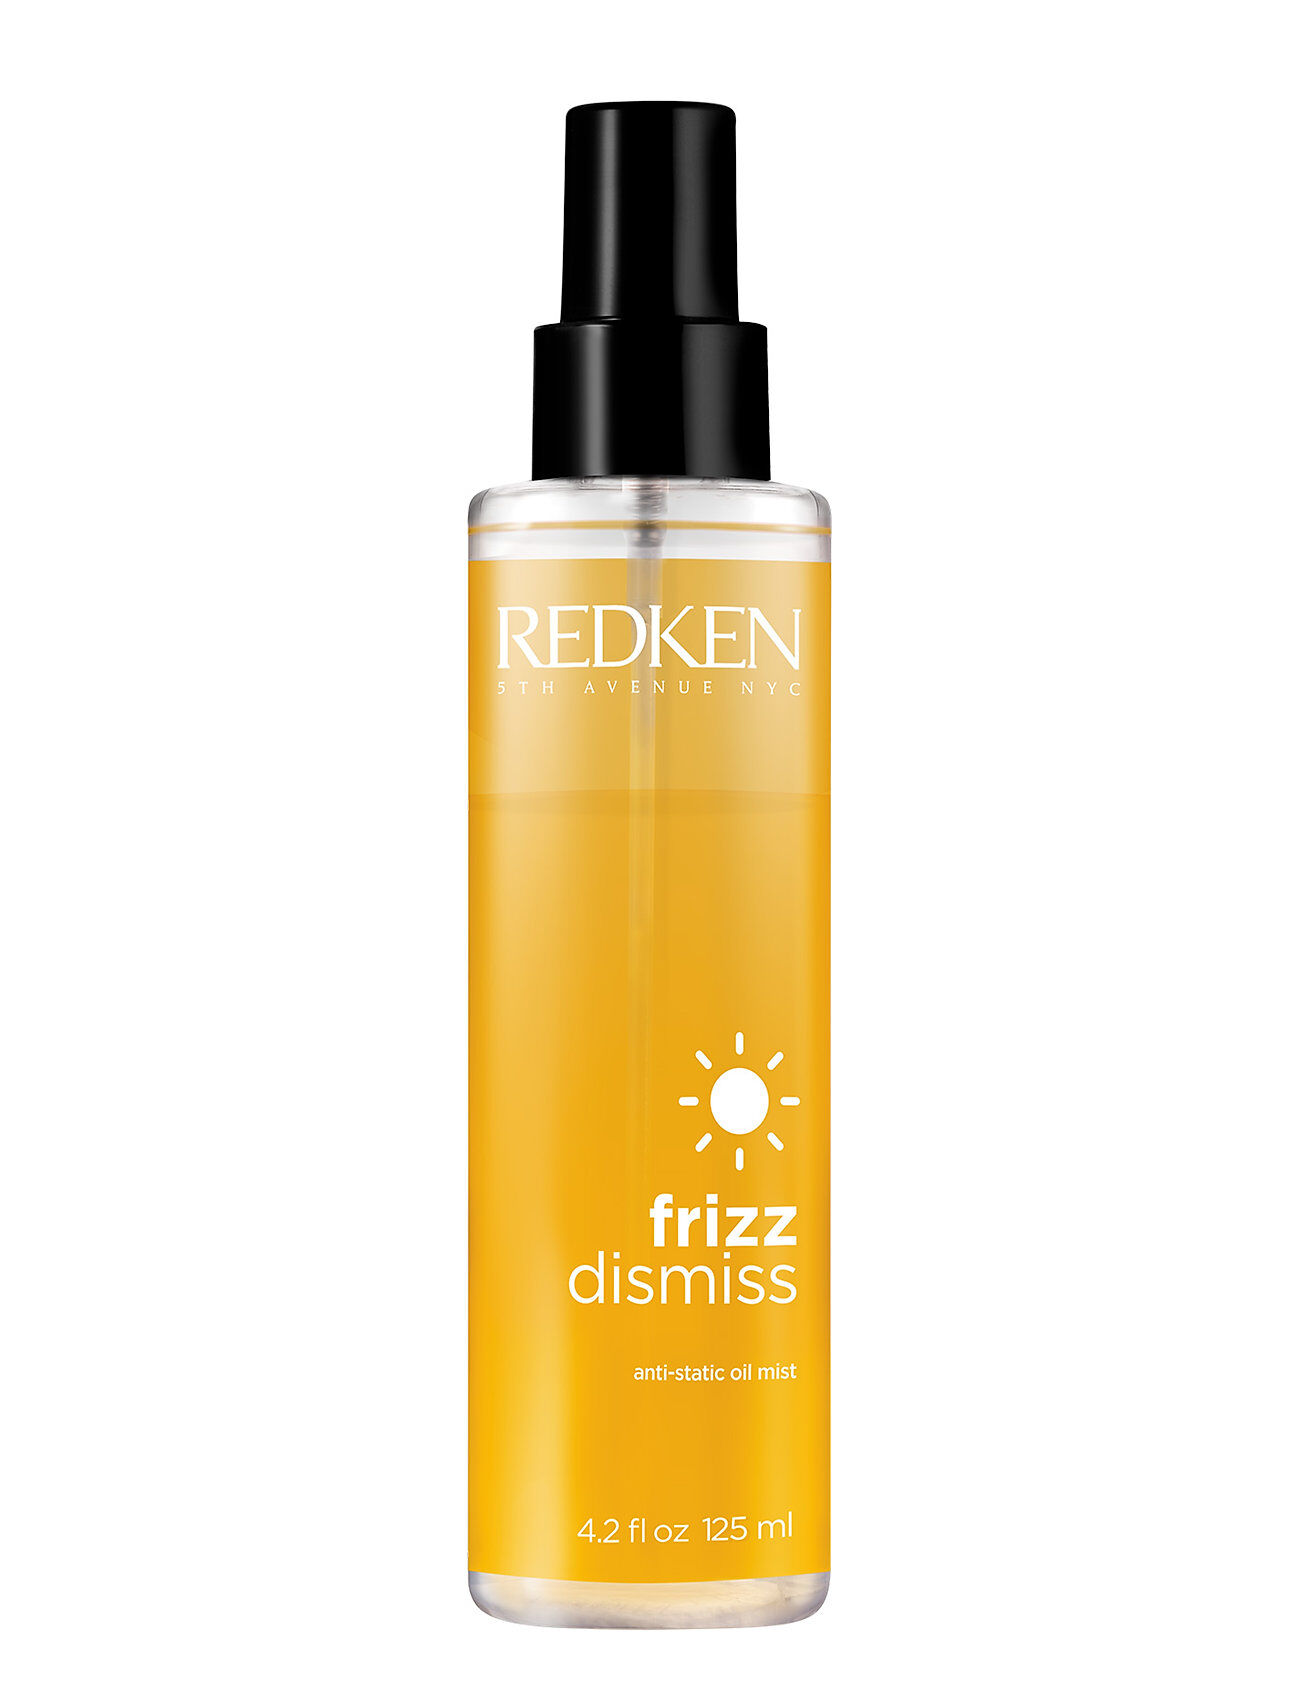 Redken Frizz Dismiss Anti-Static Oil Mist Beauty WOMEN Hair Styling Hair Mists Nude Redken